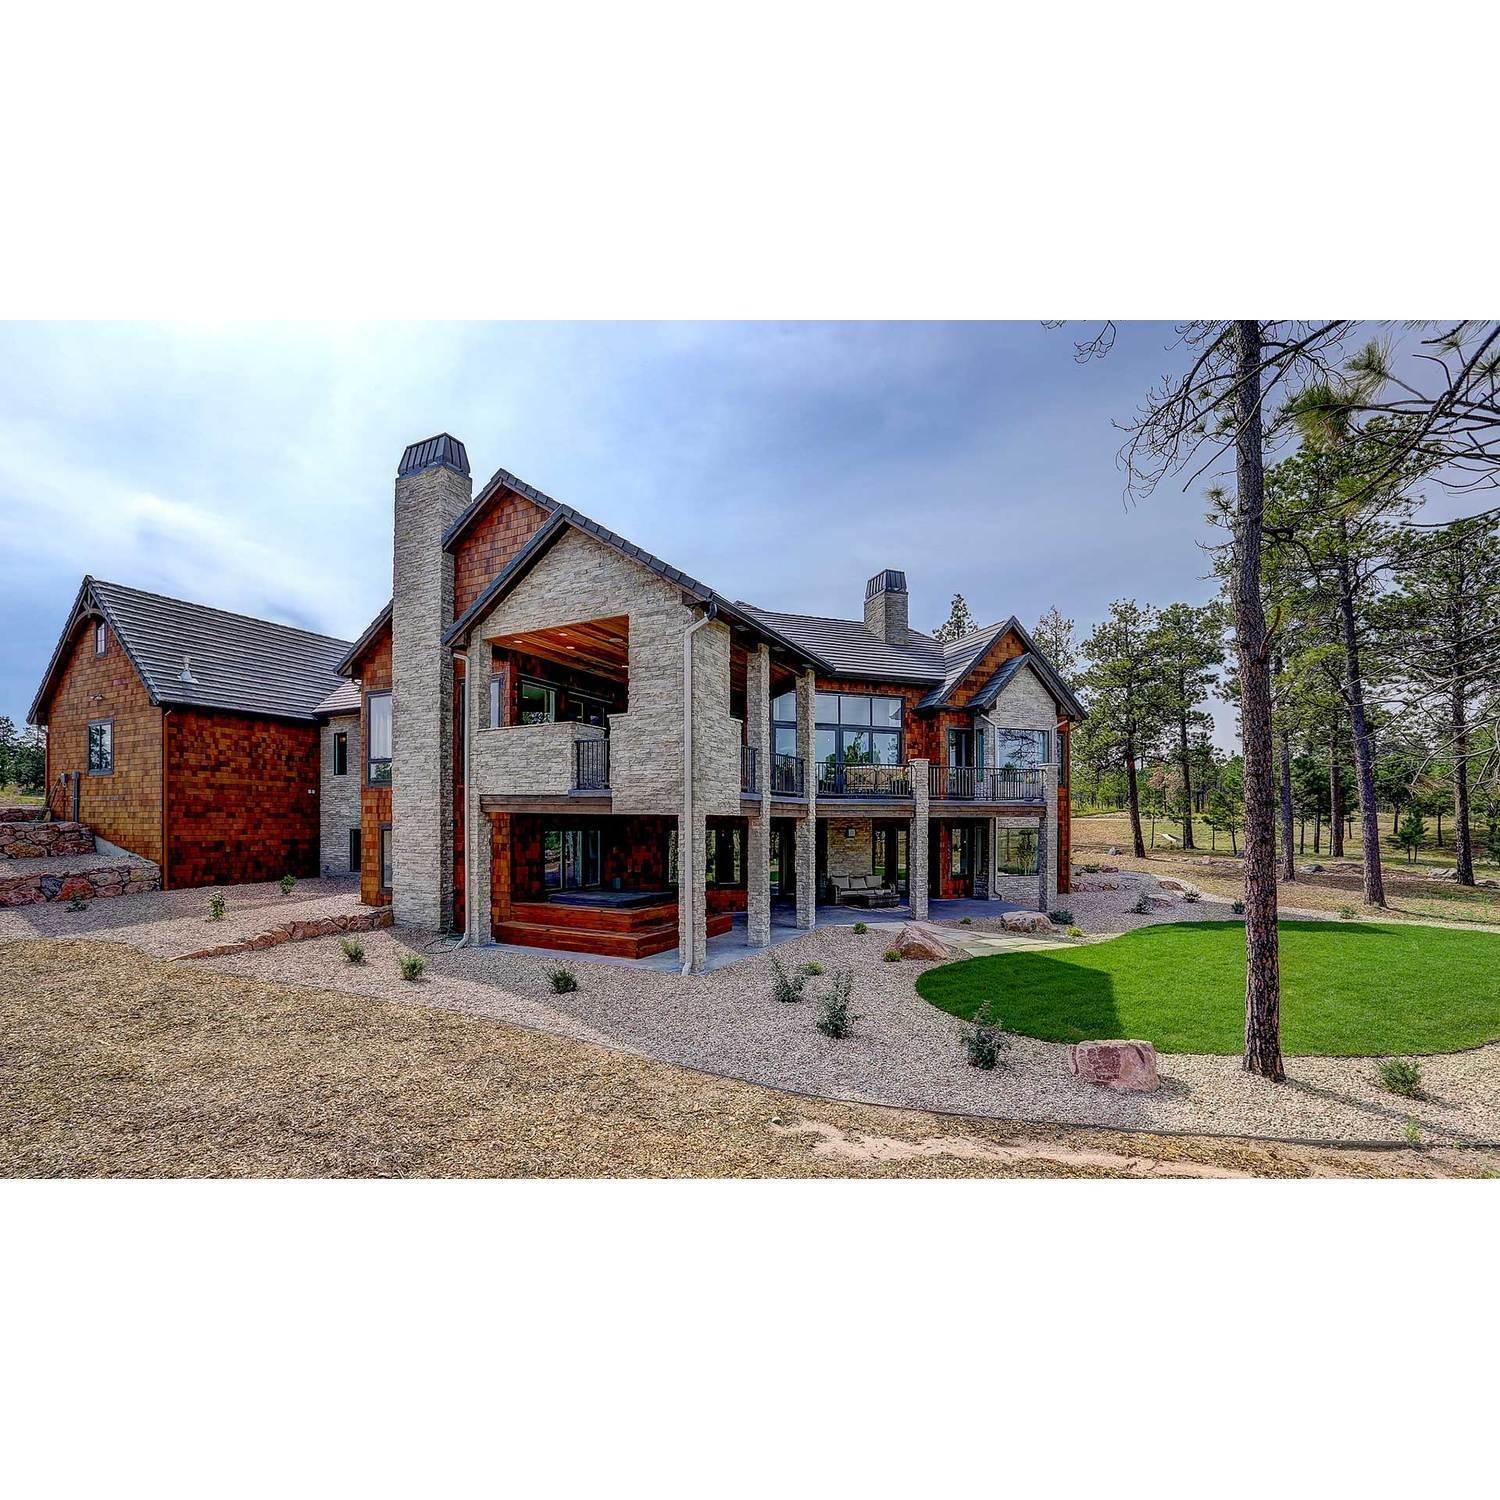 42. Galiant Homes建於 4783 Farmingdale Dr, Colorado Springs, CO 80918